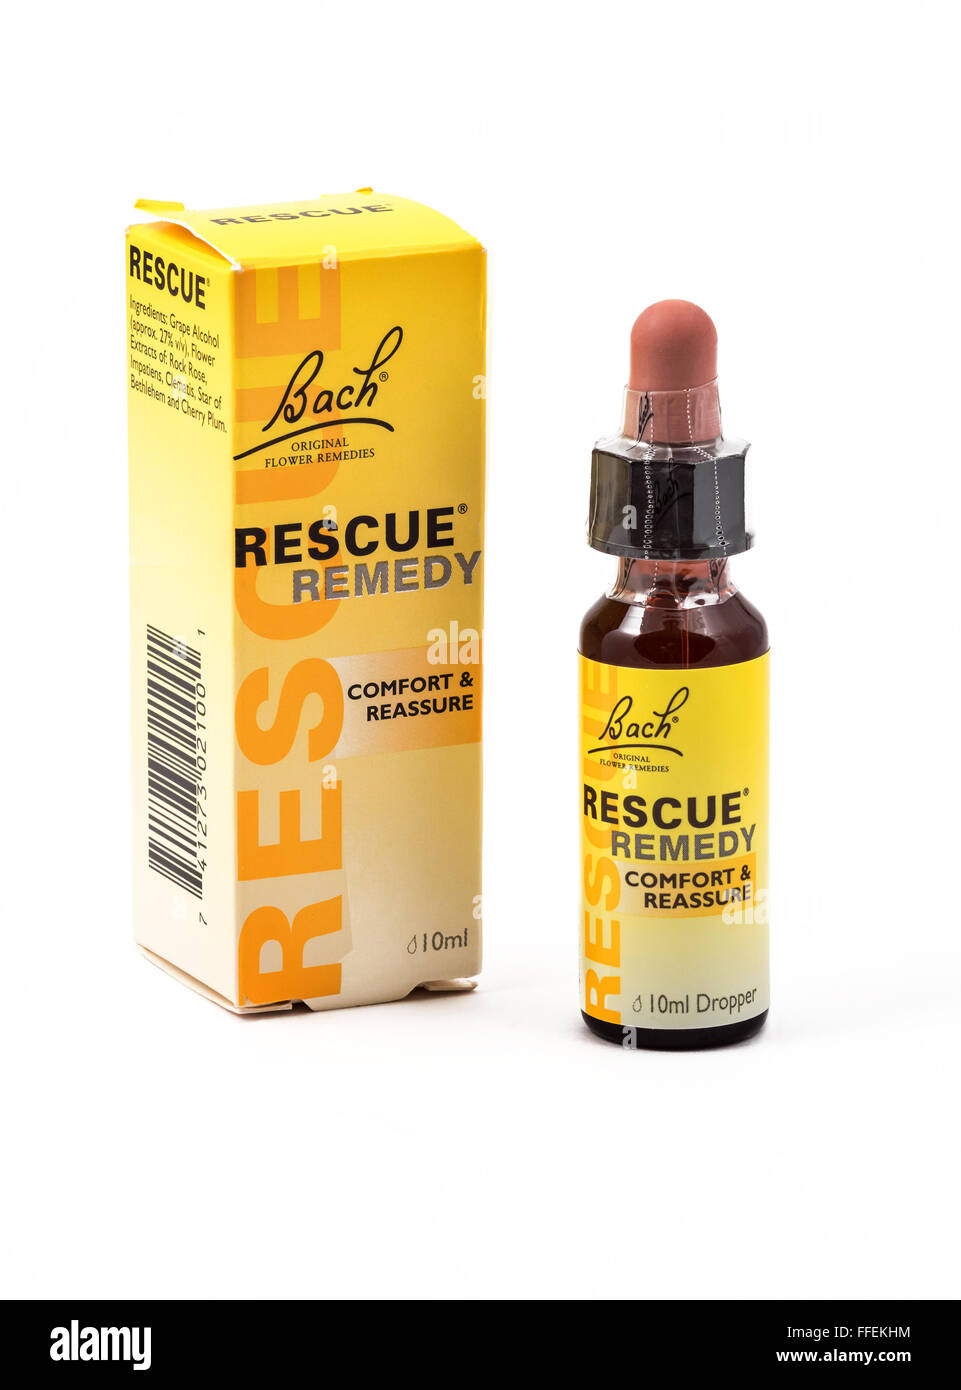 Bach Rescue Remedy, utilizado como tratamiento para el estrés, la tensión, etc. Foto de stock